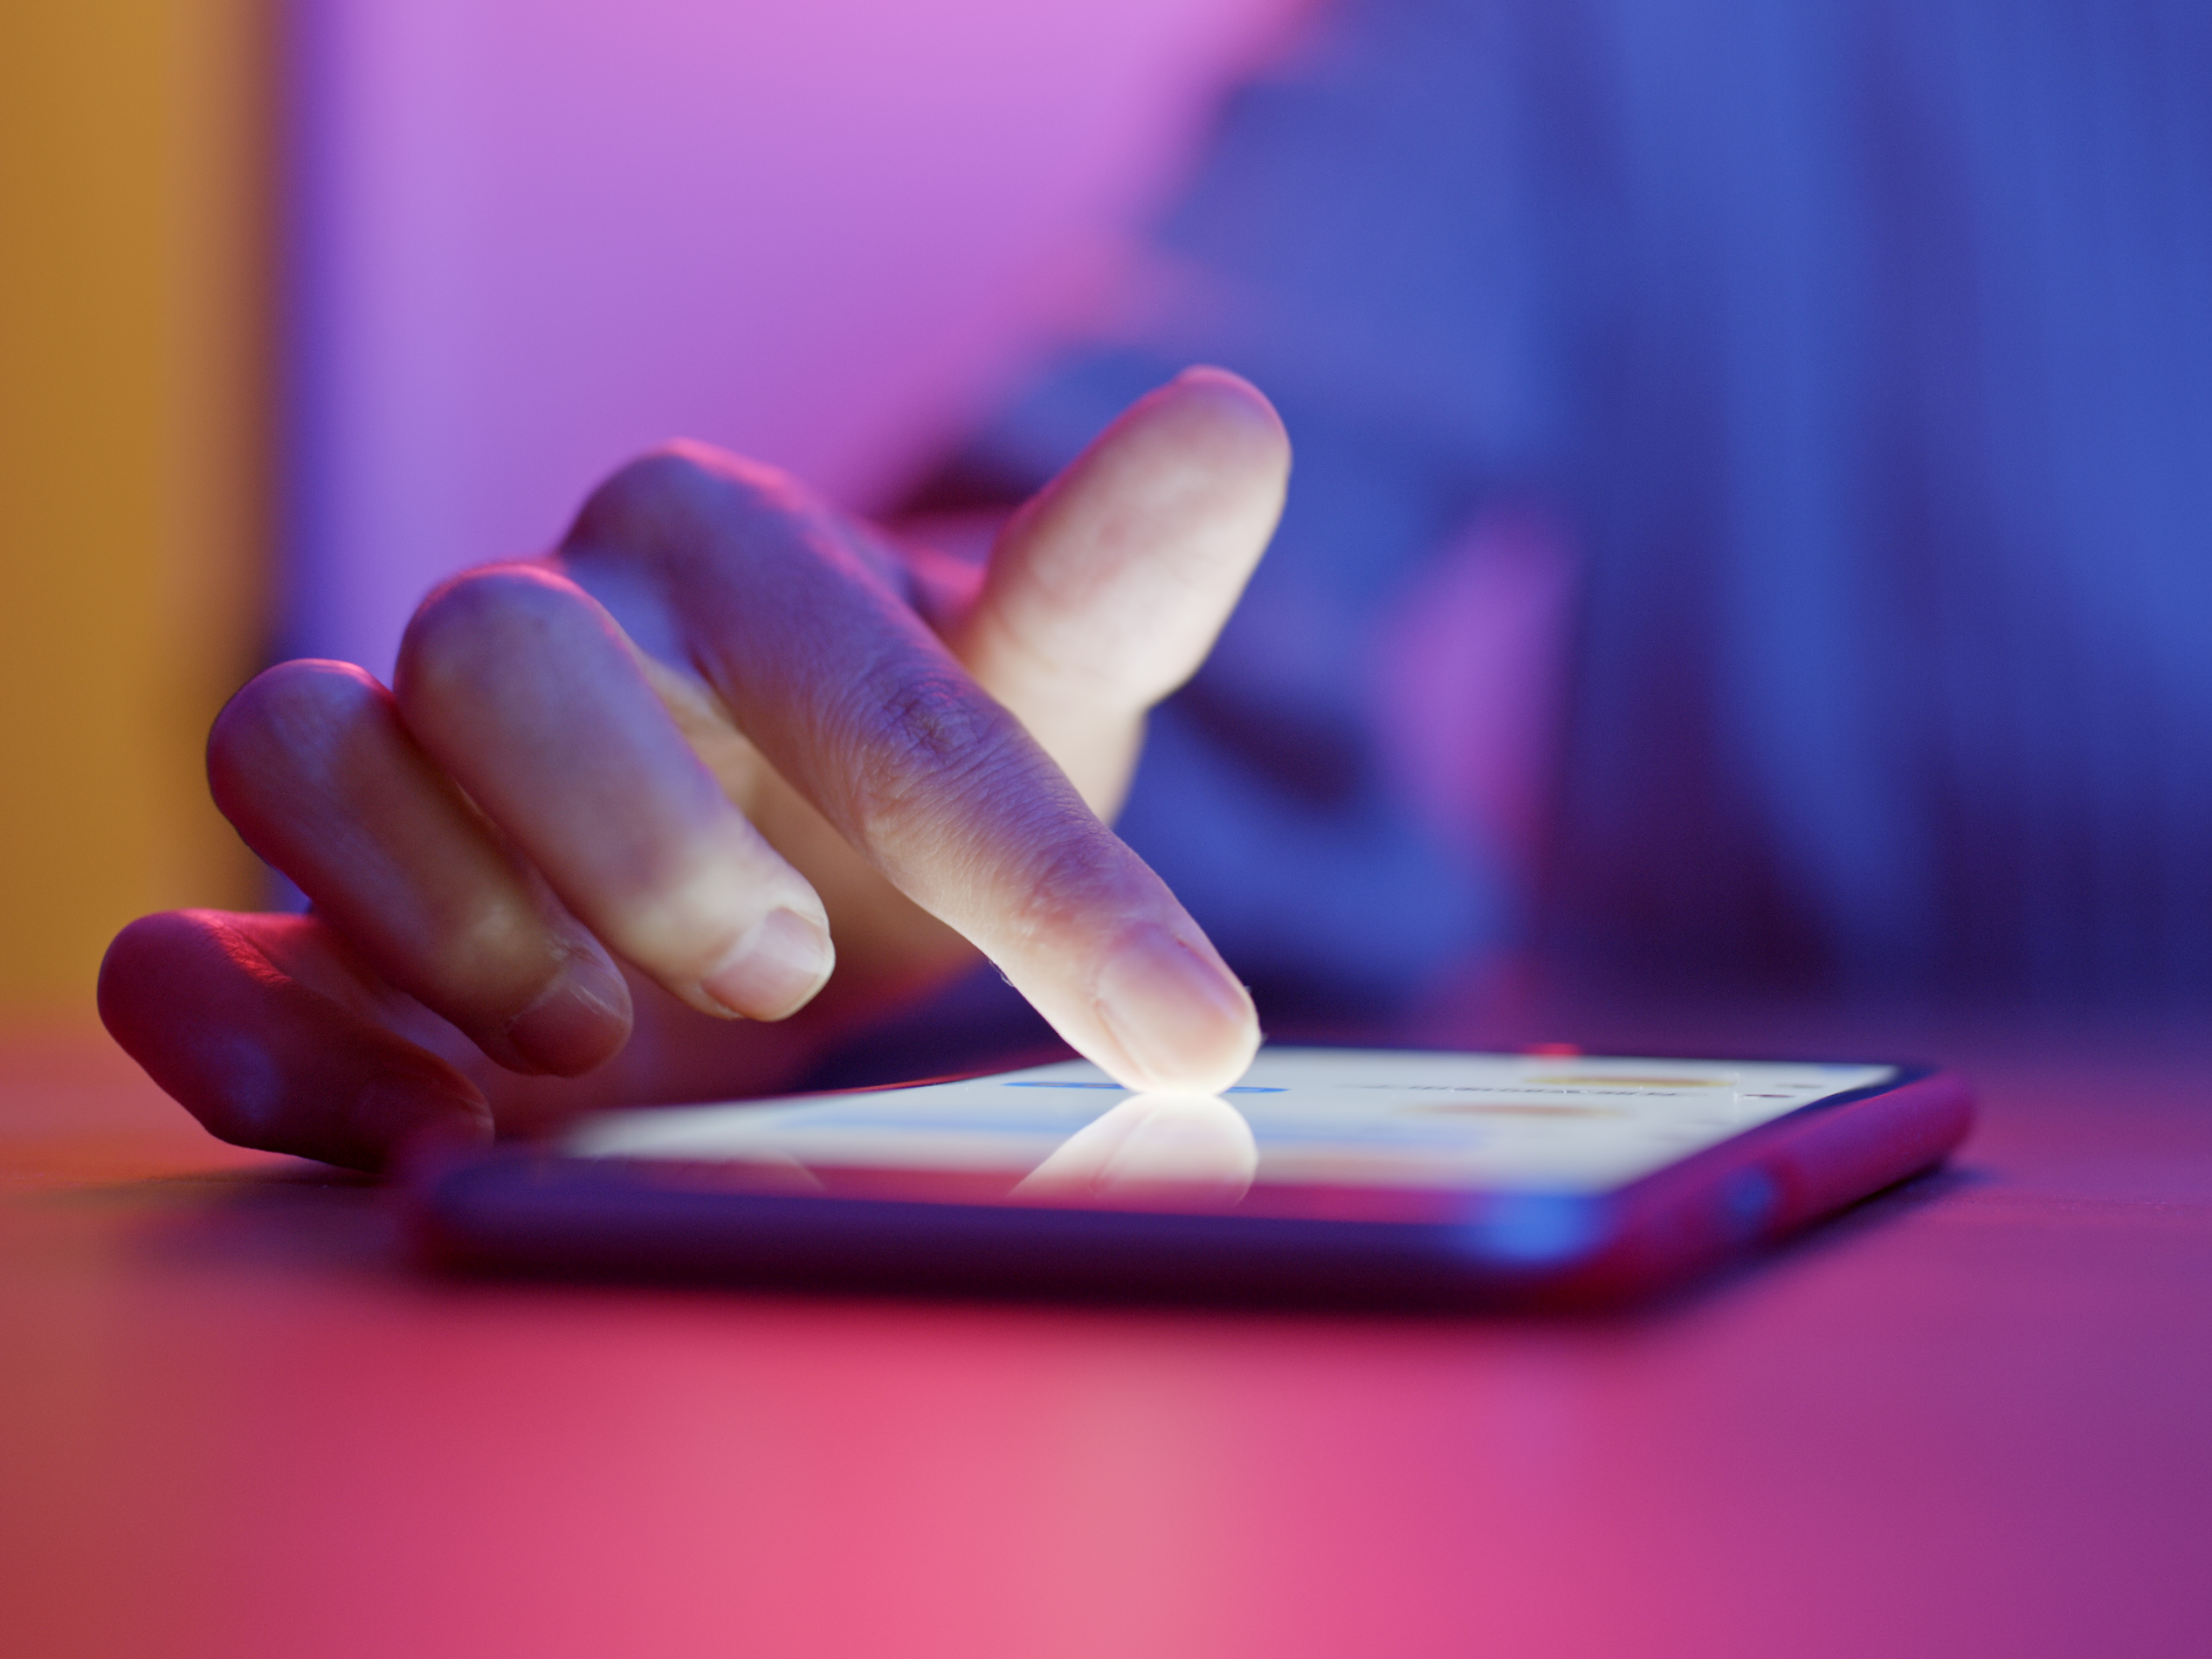 Nærbilde av mobiltelefon som ligger på et rosa bord med en hånd som trukker på den. Uskarp lilla, rosa og gul bakgrunn.